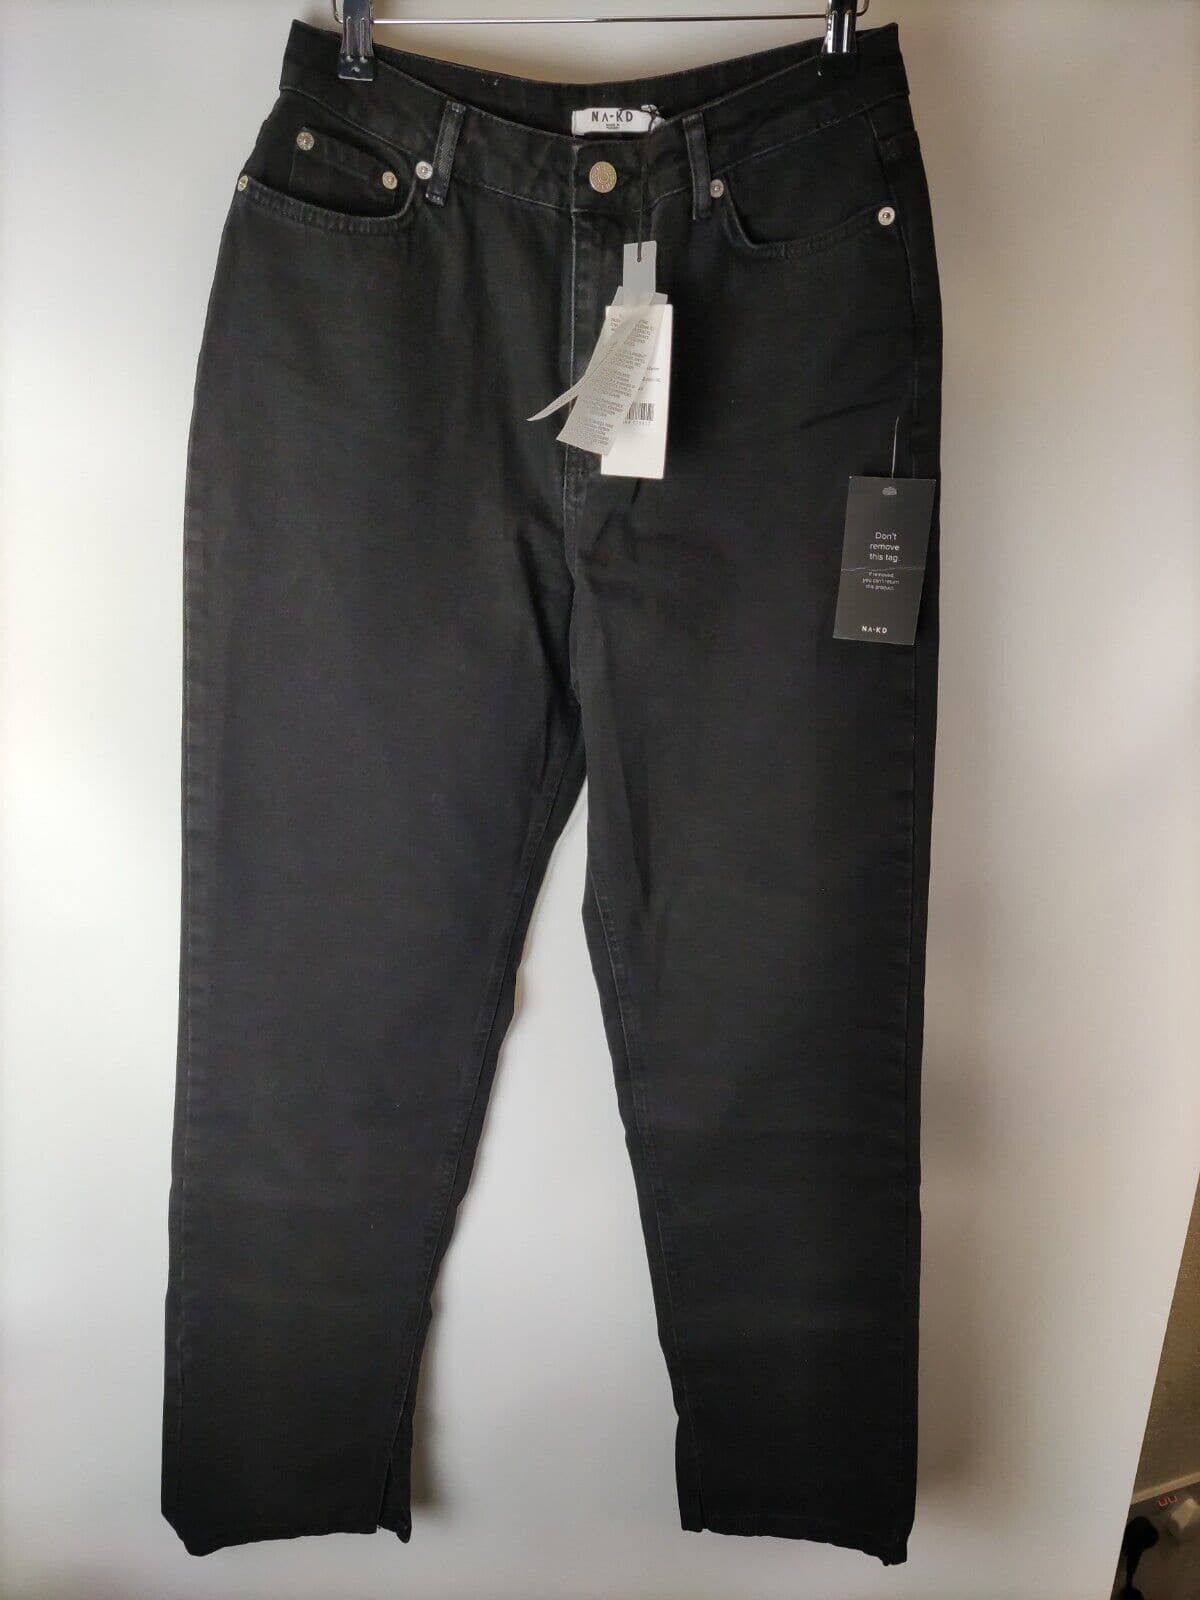 Na-kd High Waist Side Slit Denim Jeans. Black. UK 16. ****V91